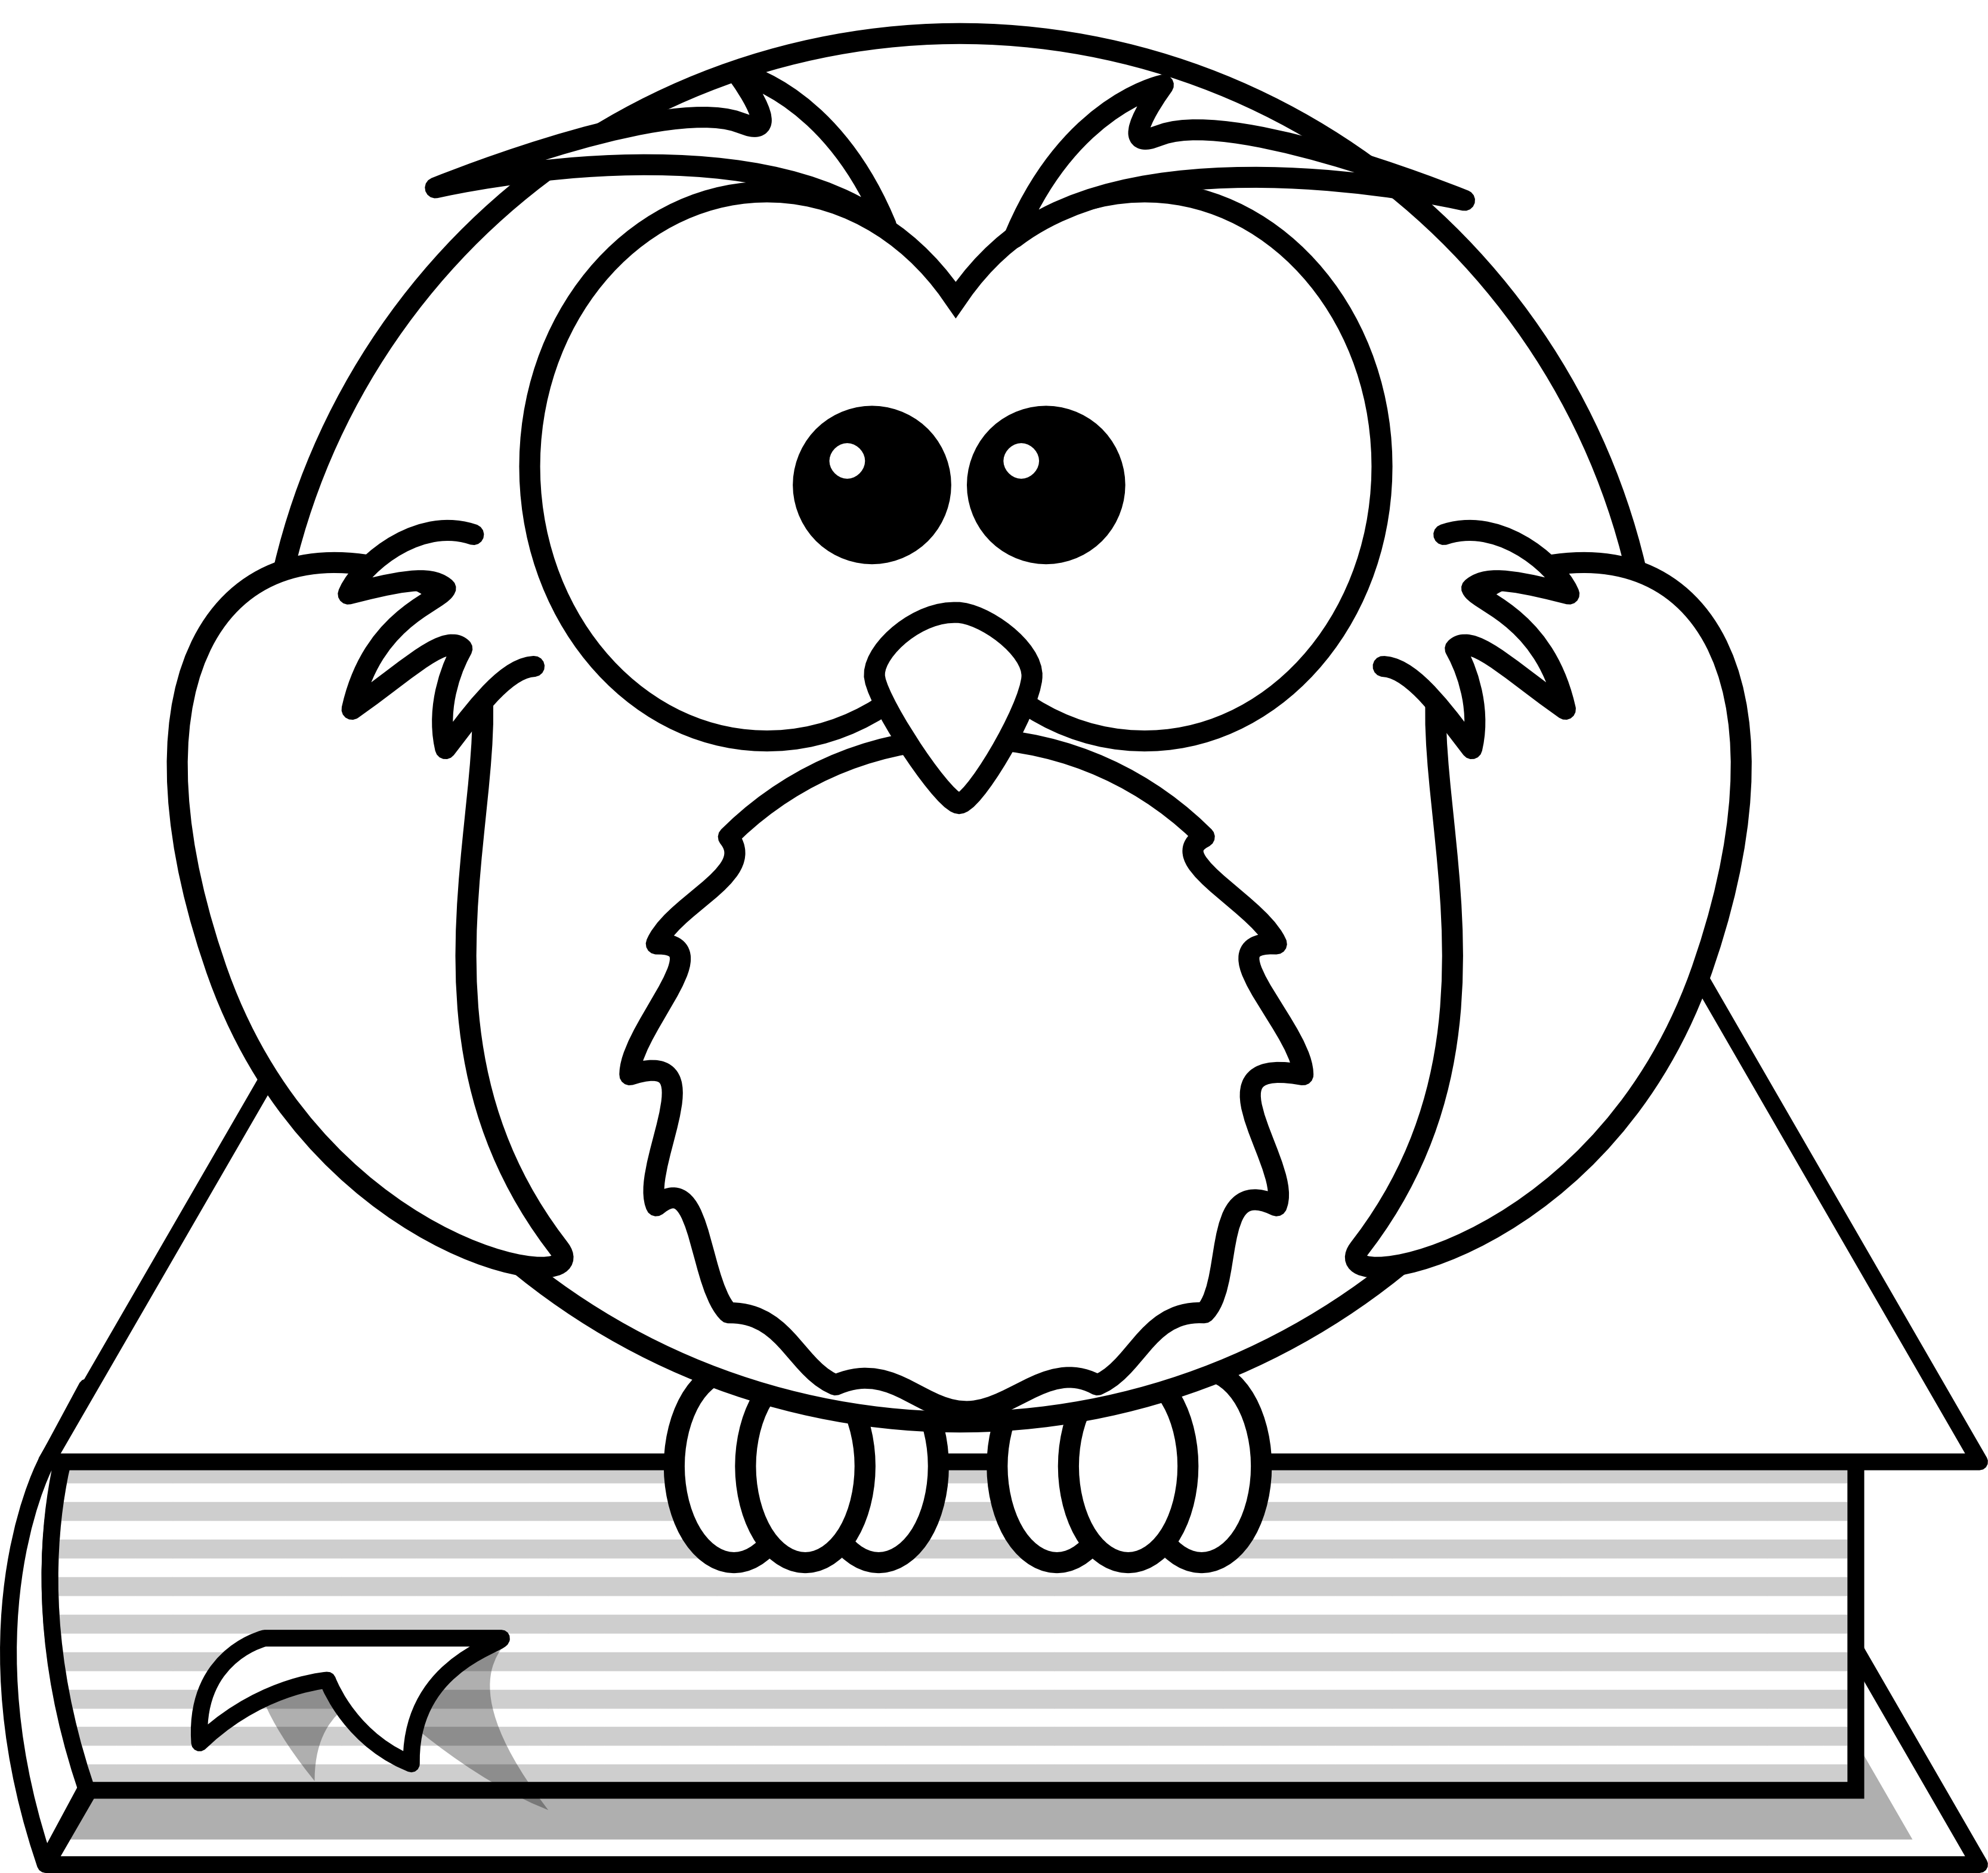 clipartist.net » Clip Art » Lemmling Cartoon Owl Sitting on a Book ...